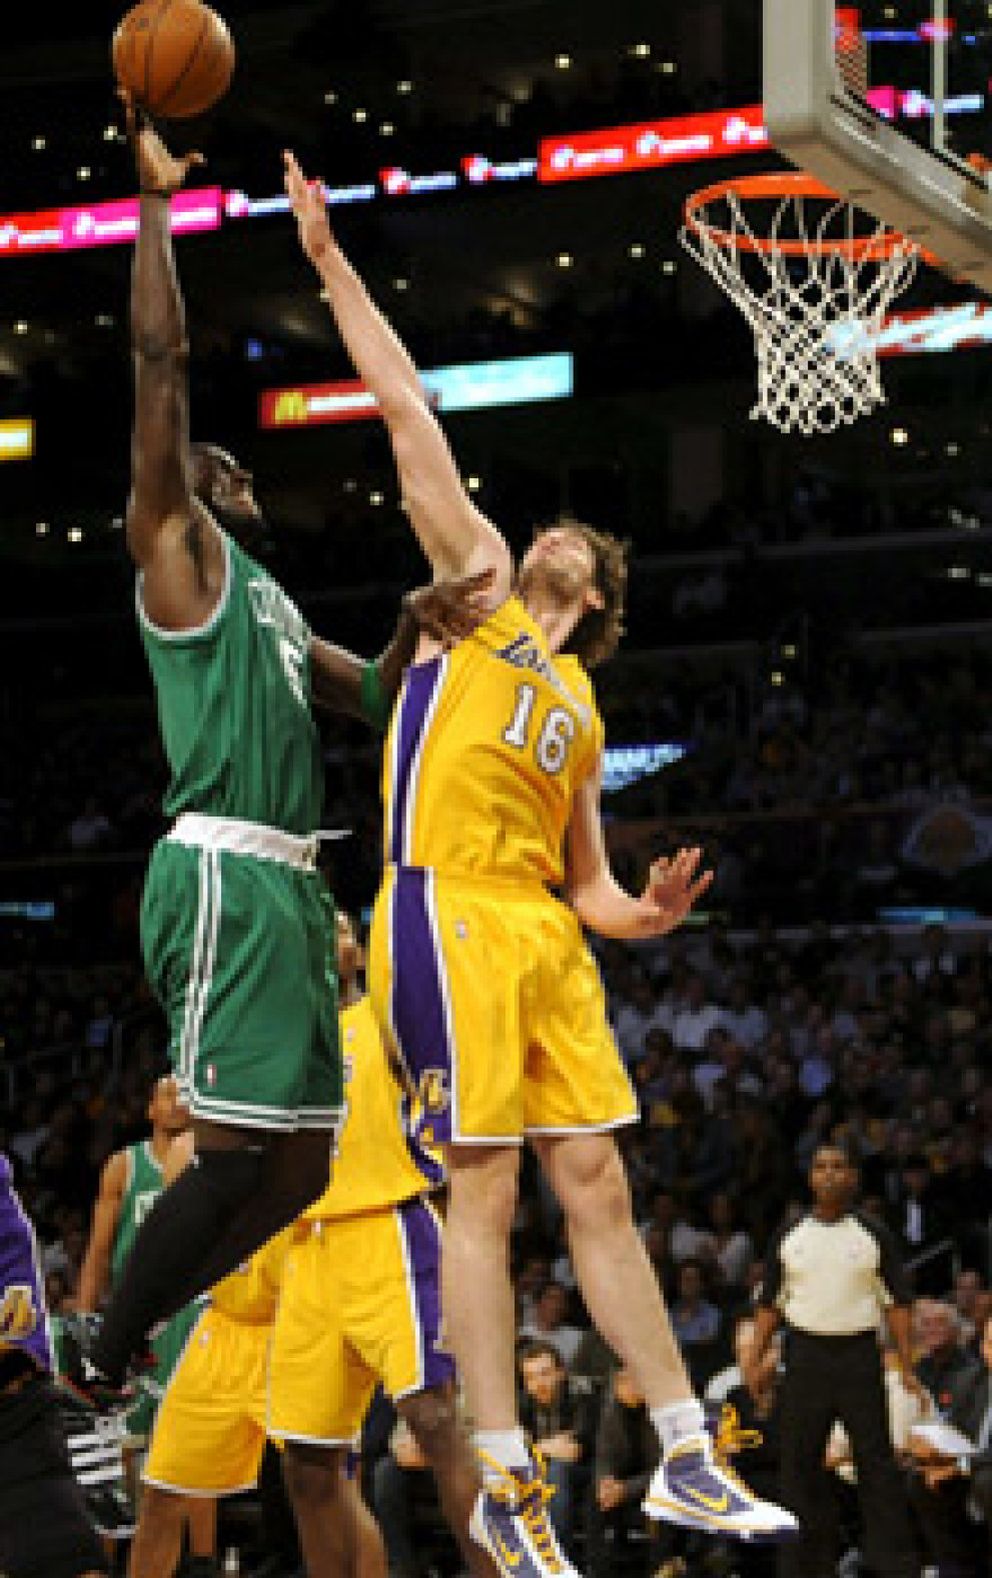 Foto: Los Lakers caen ante los Celtics a pesar del gran partido de Gasol